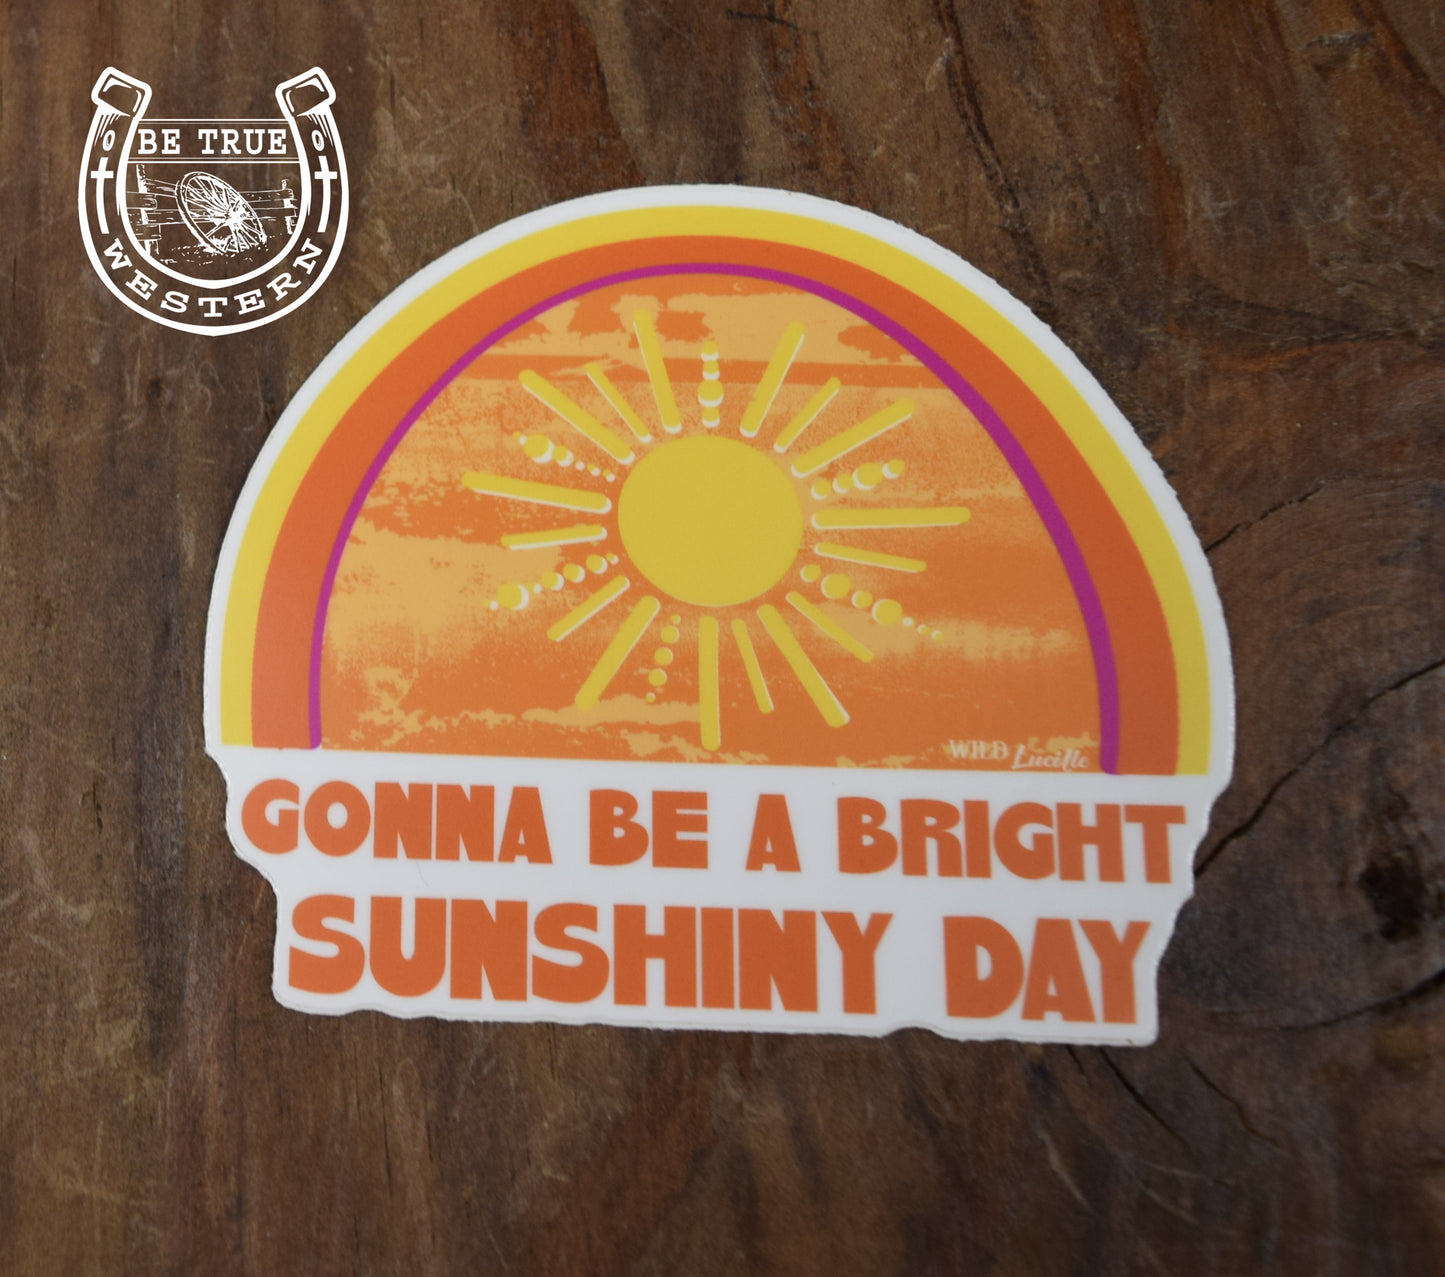 Gonna Be a Bright Sunshiny Day Sticker